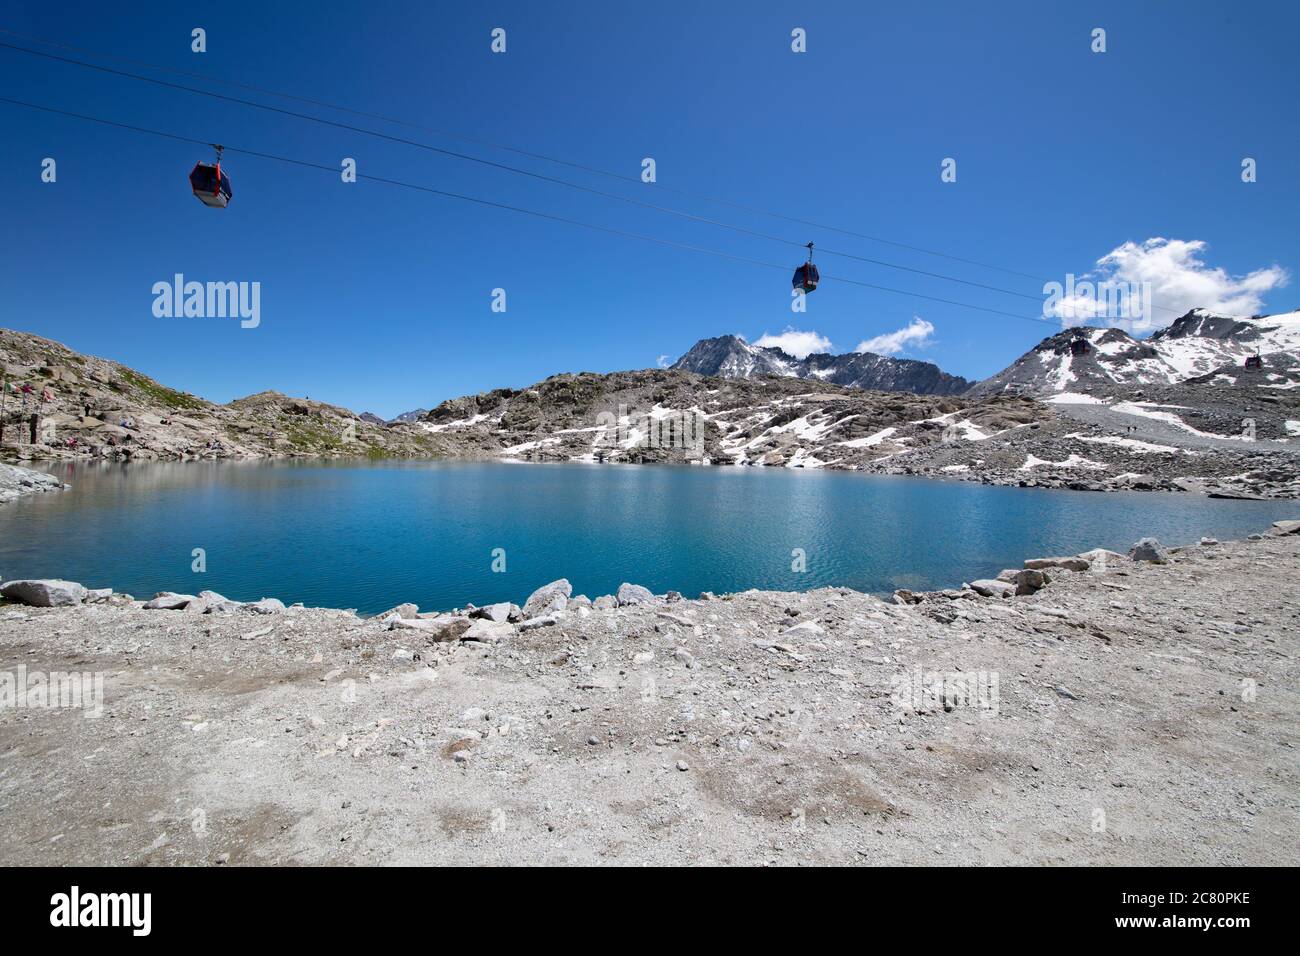 Ein schönes Weitwinkelbild eines kleinen Sees am 'Ghiacciao della Presena', dem Presena-Gletscher, Trentino, Italien Stockfoto